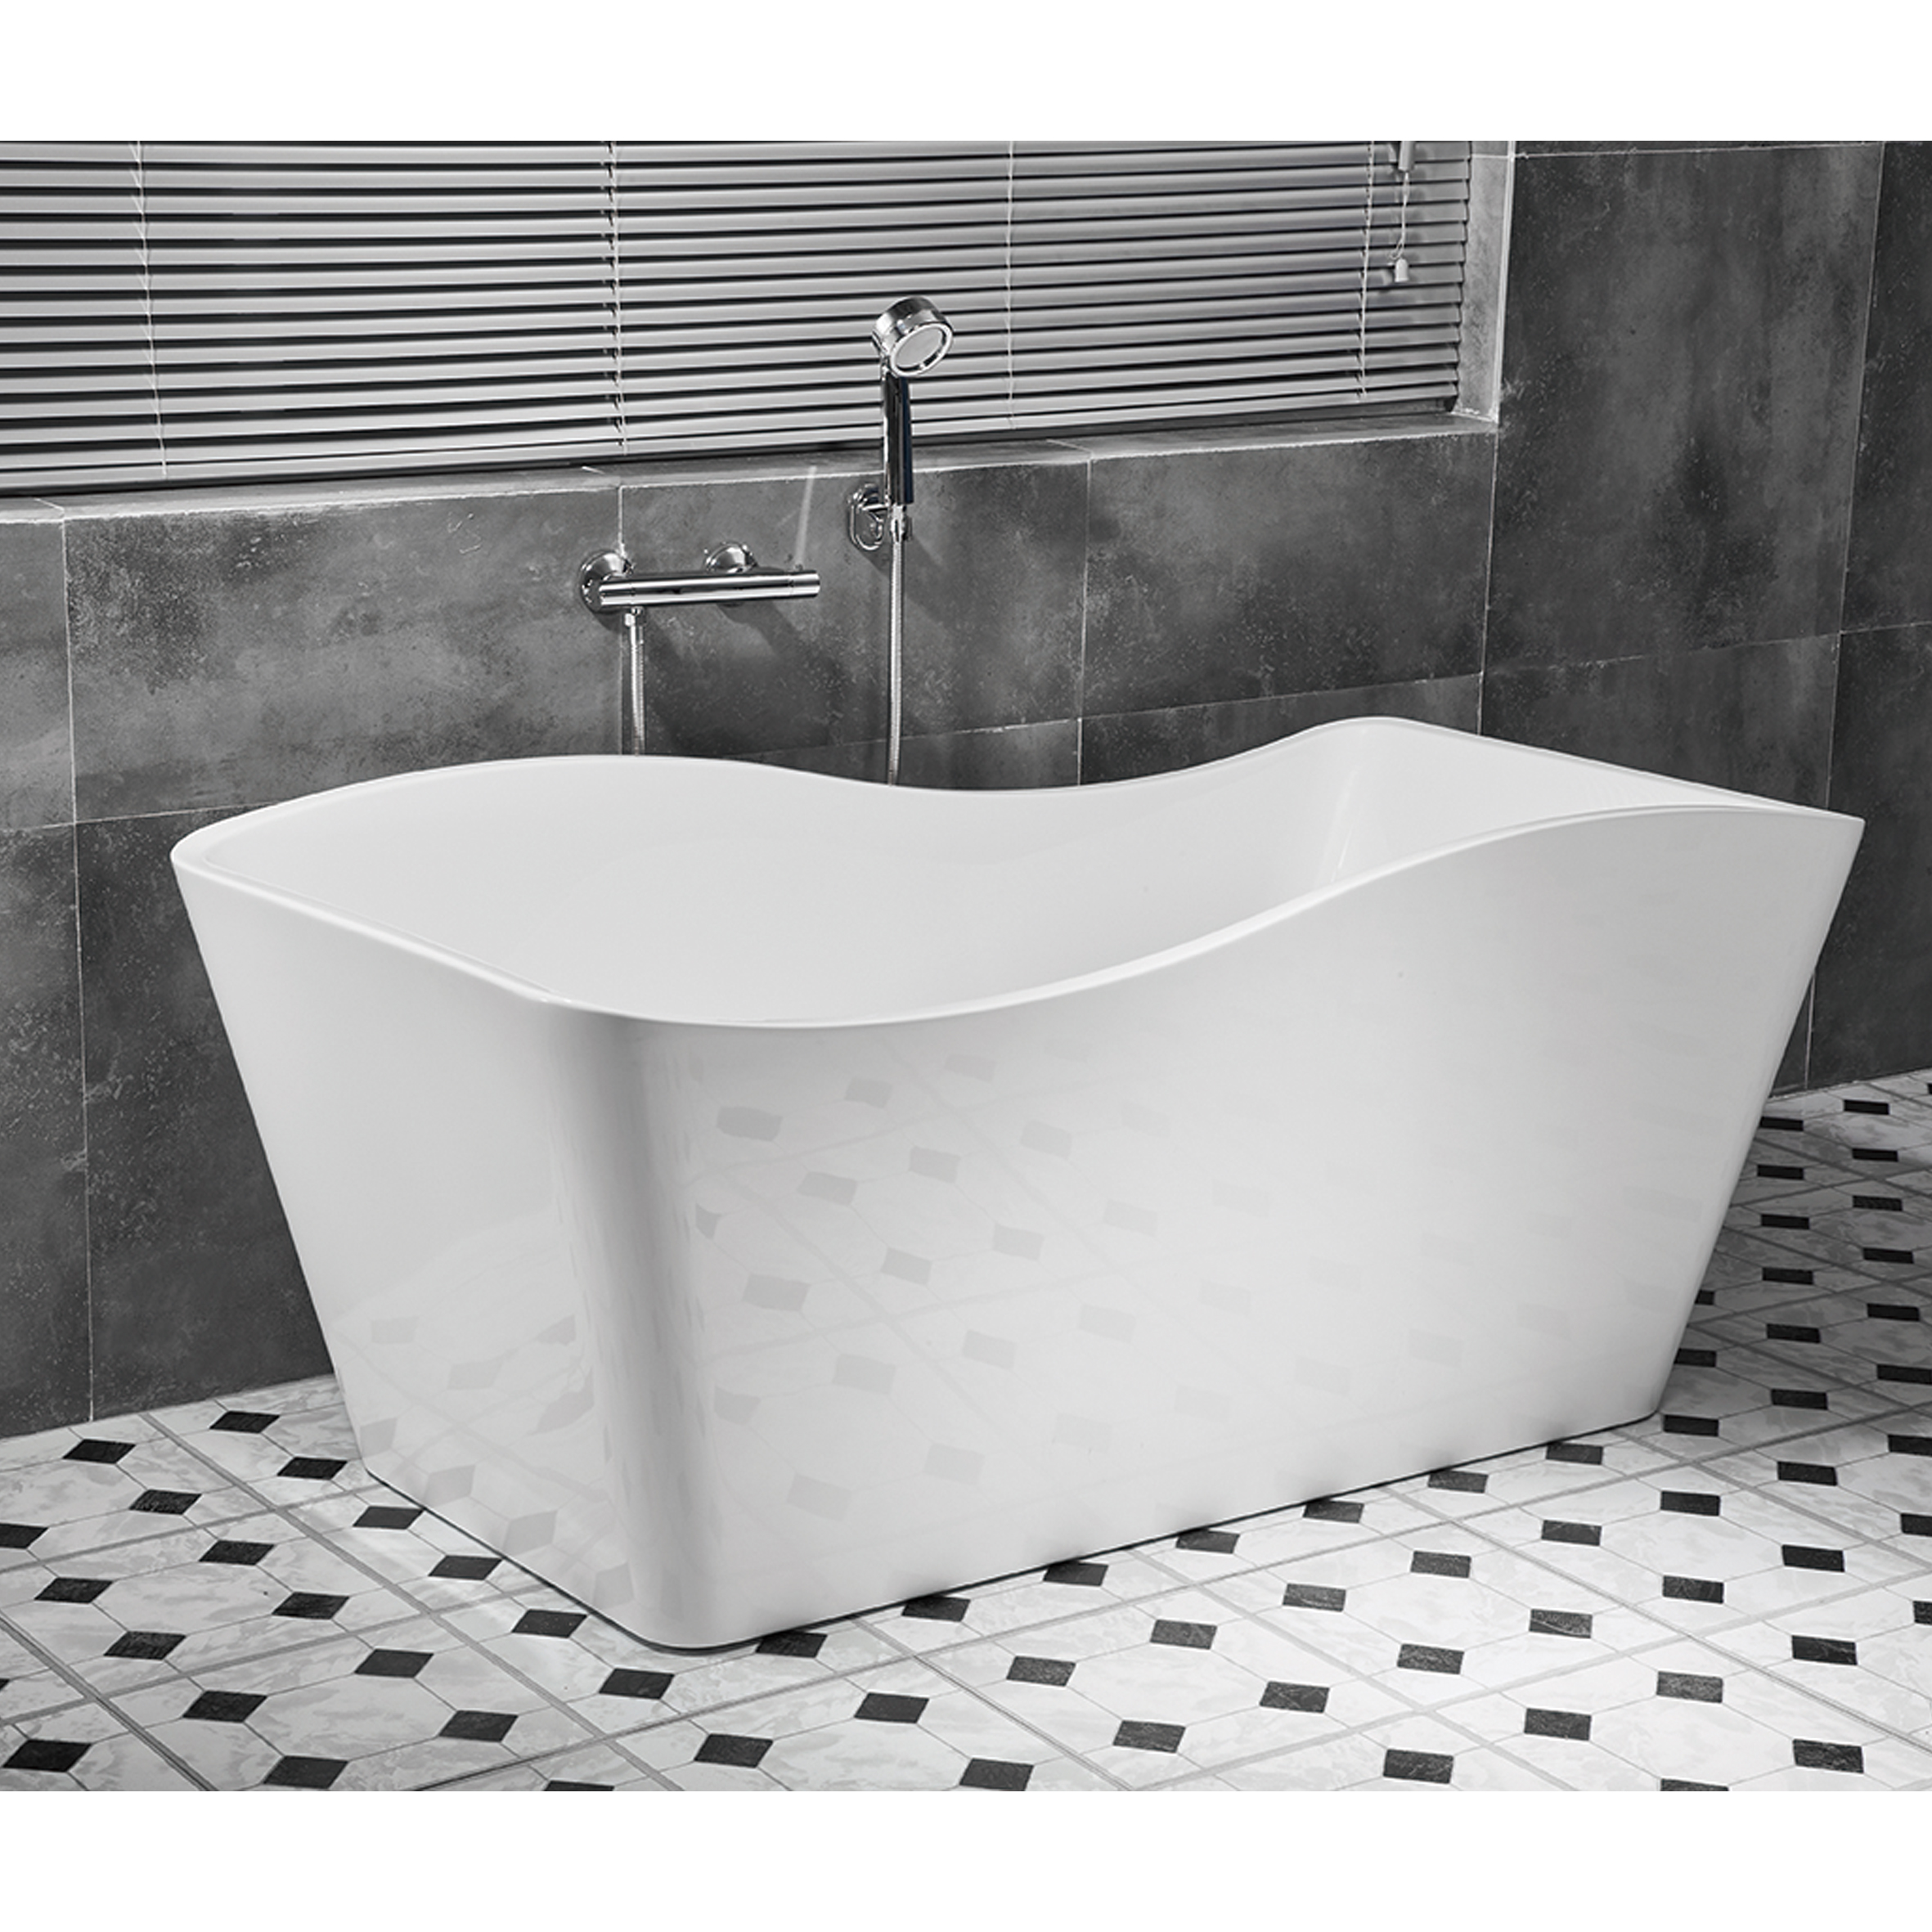 Swedbe Vita ванна отдельностоящая акриловая (1700 мм) 8809 - 2